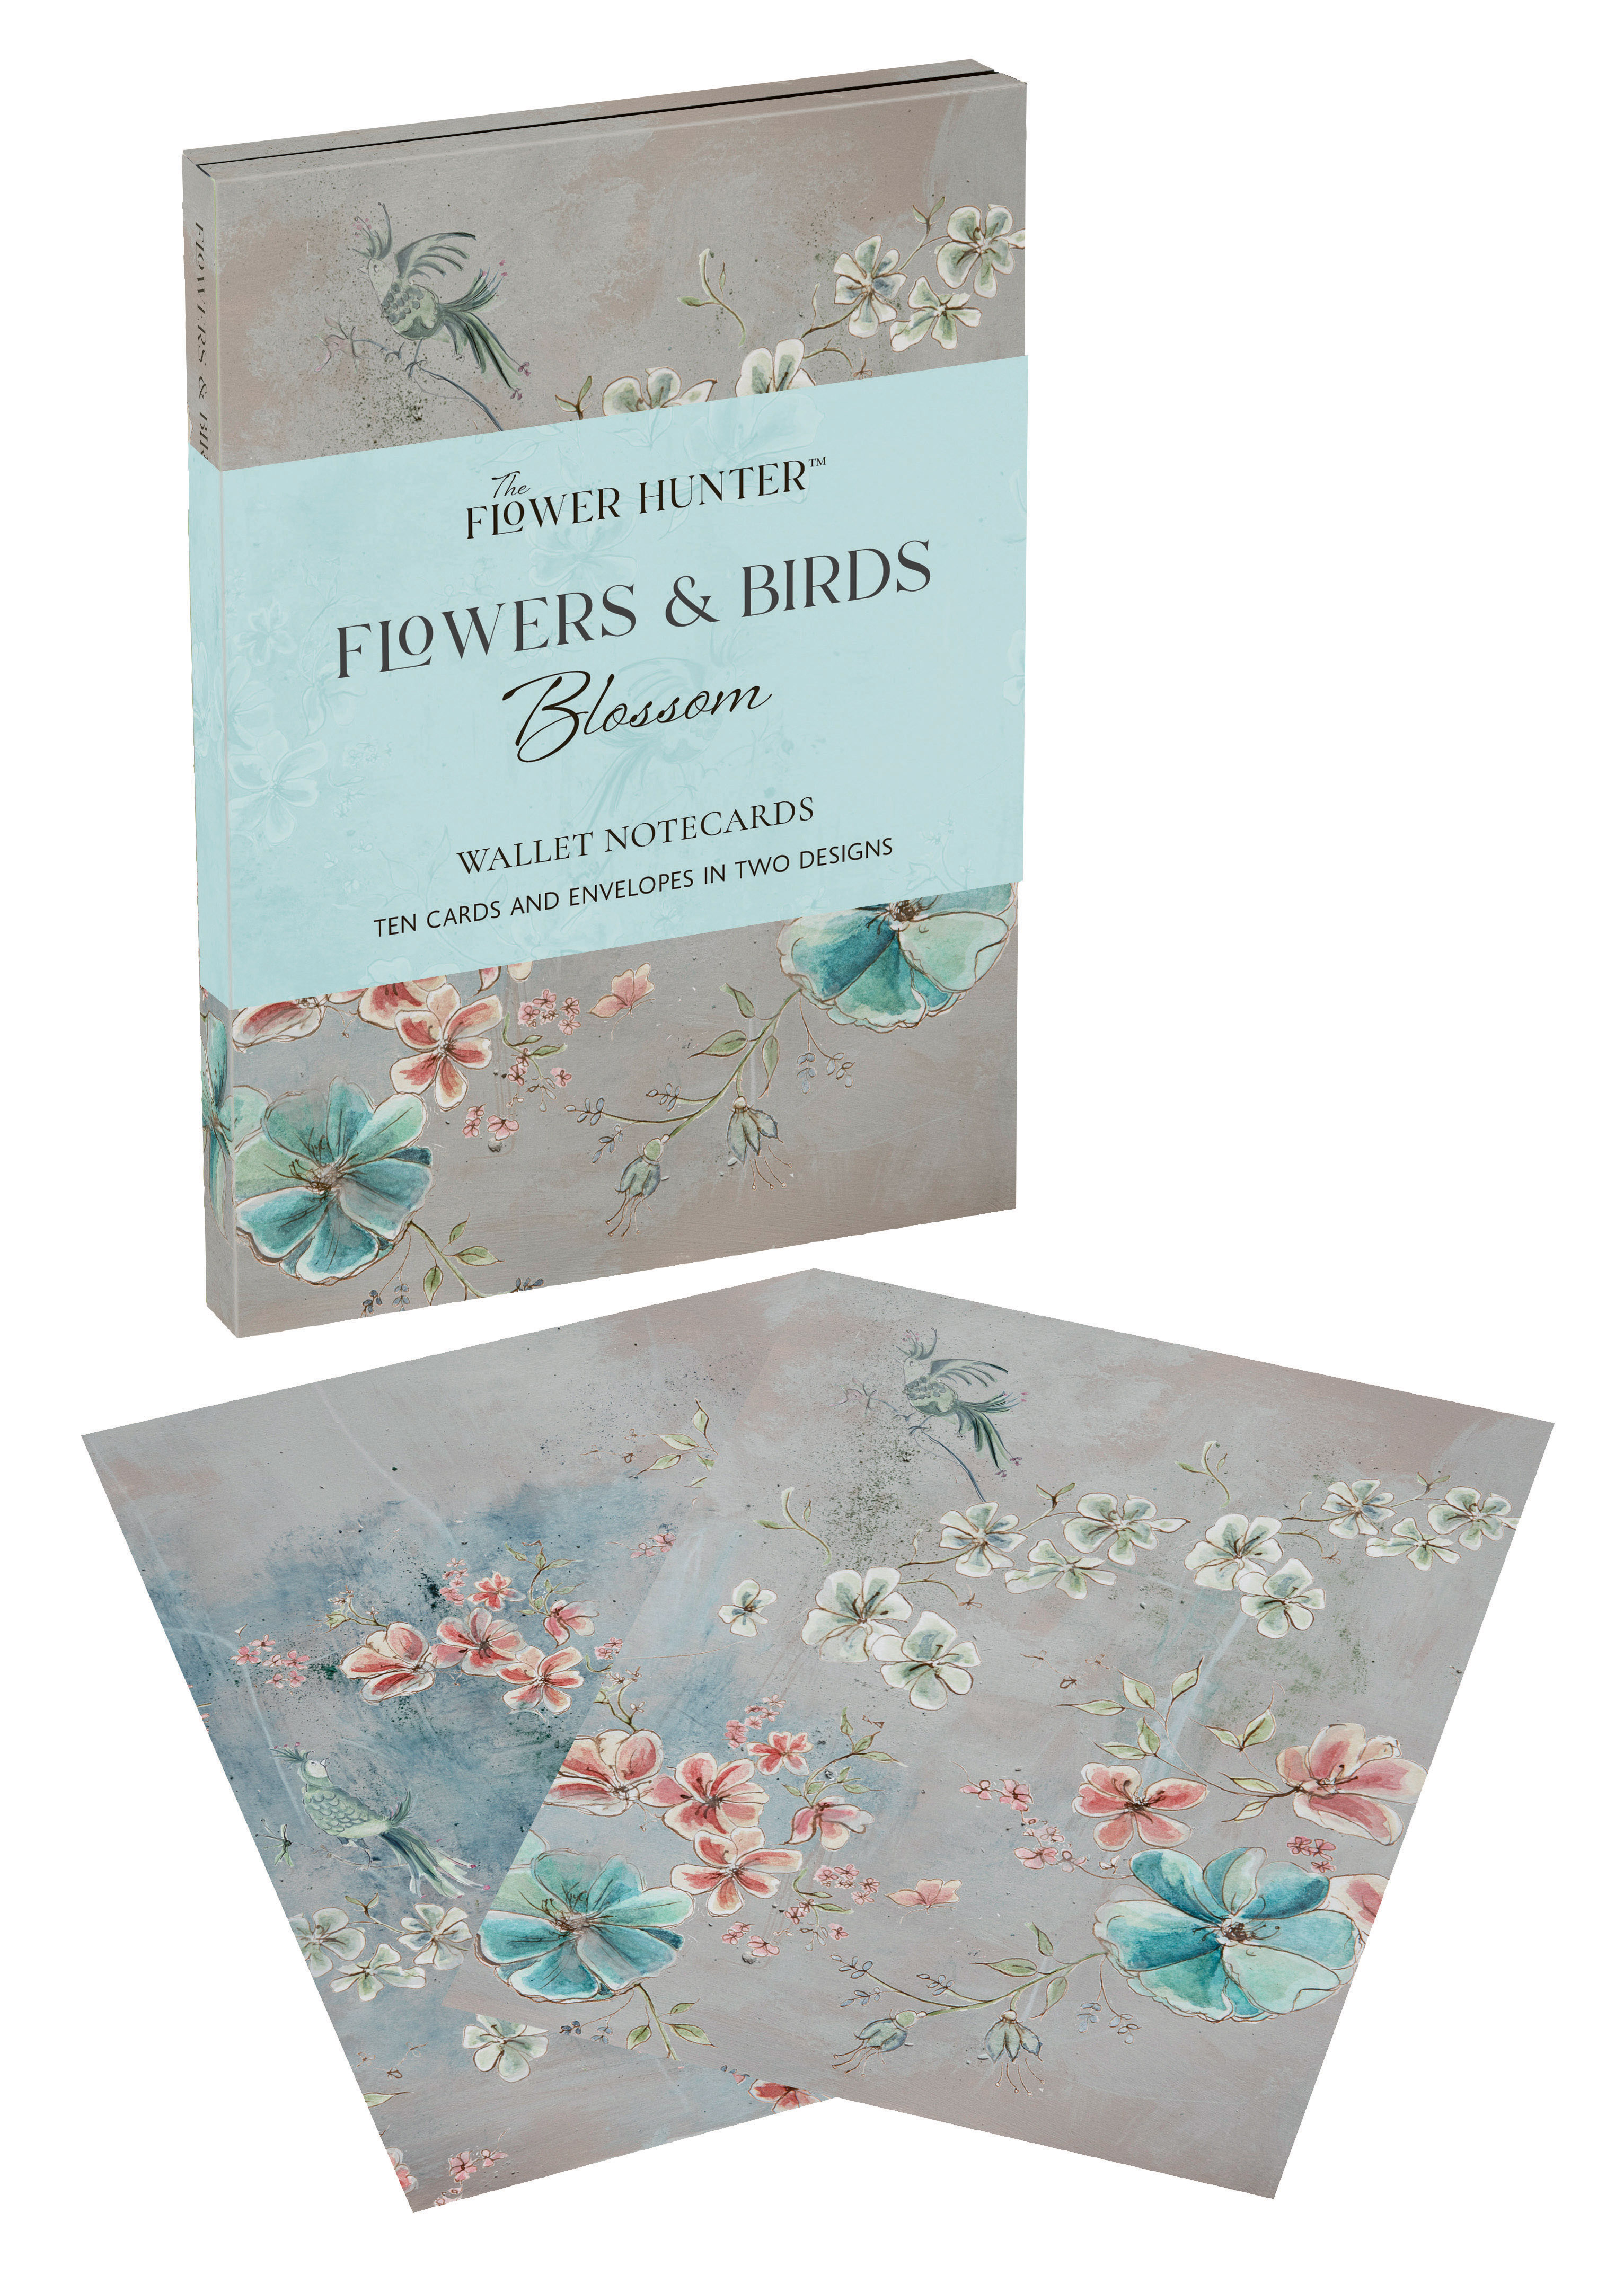 Flowers & Birds Blossom Wallet Notecards